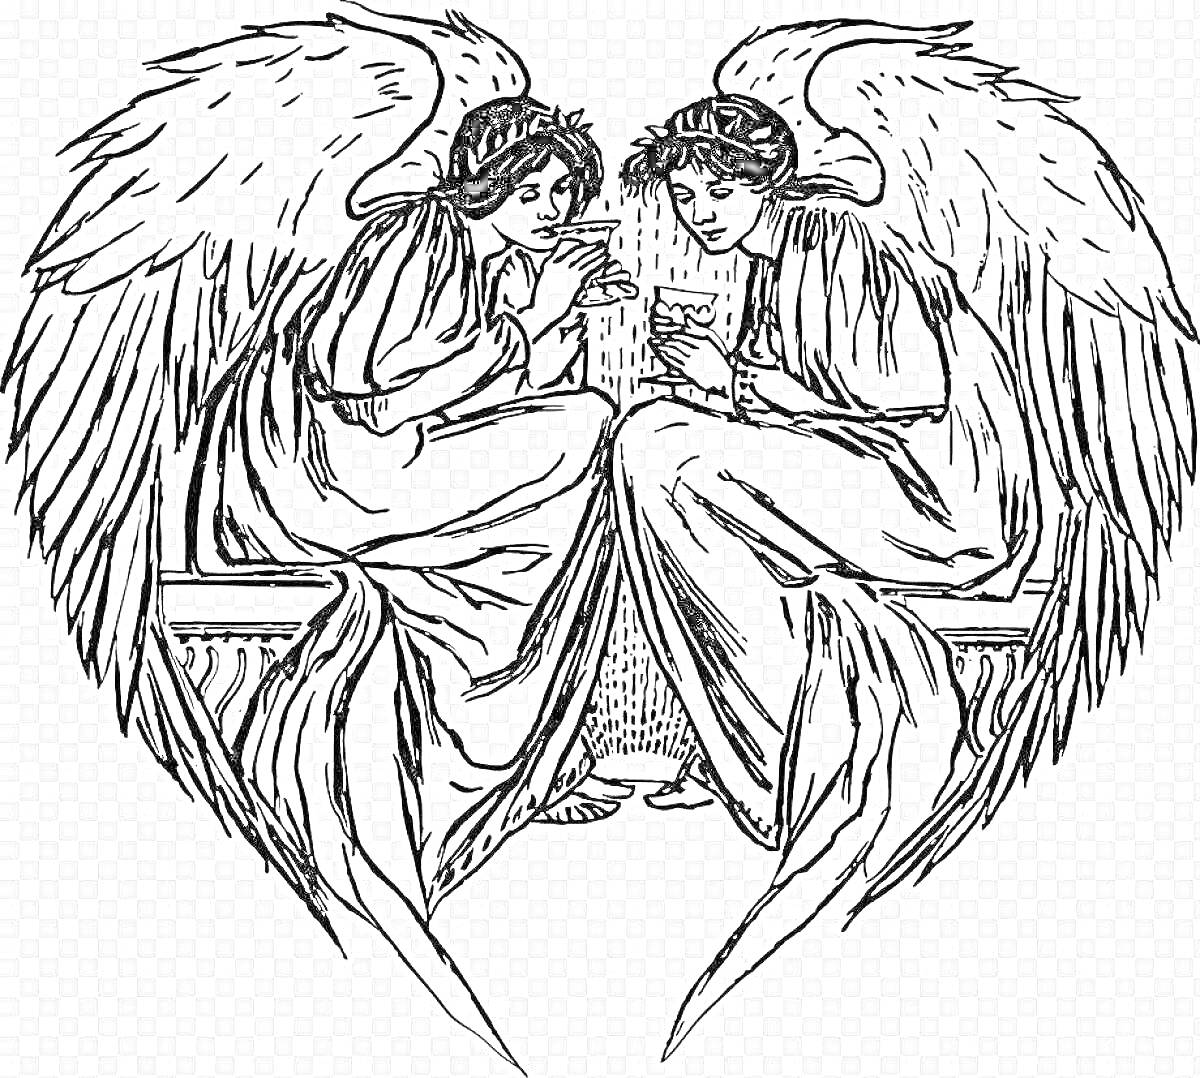 Раскраска Два ангела с широко раскинутыми крыльями сидят напротив друг друга, беседуя